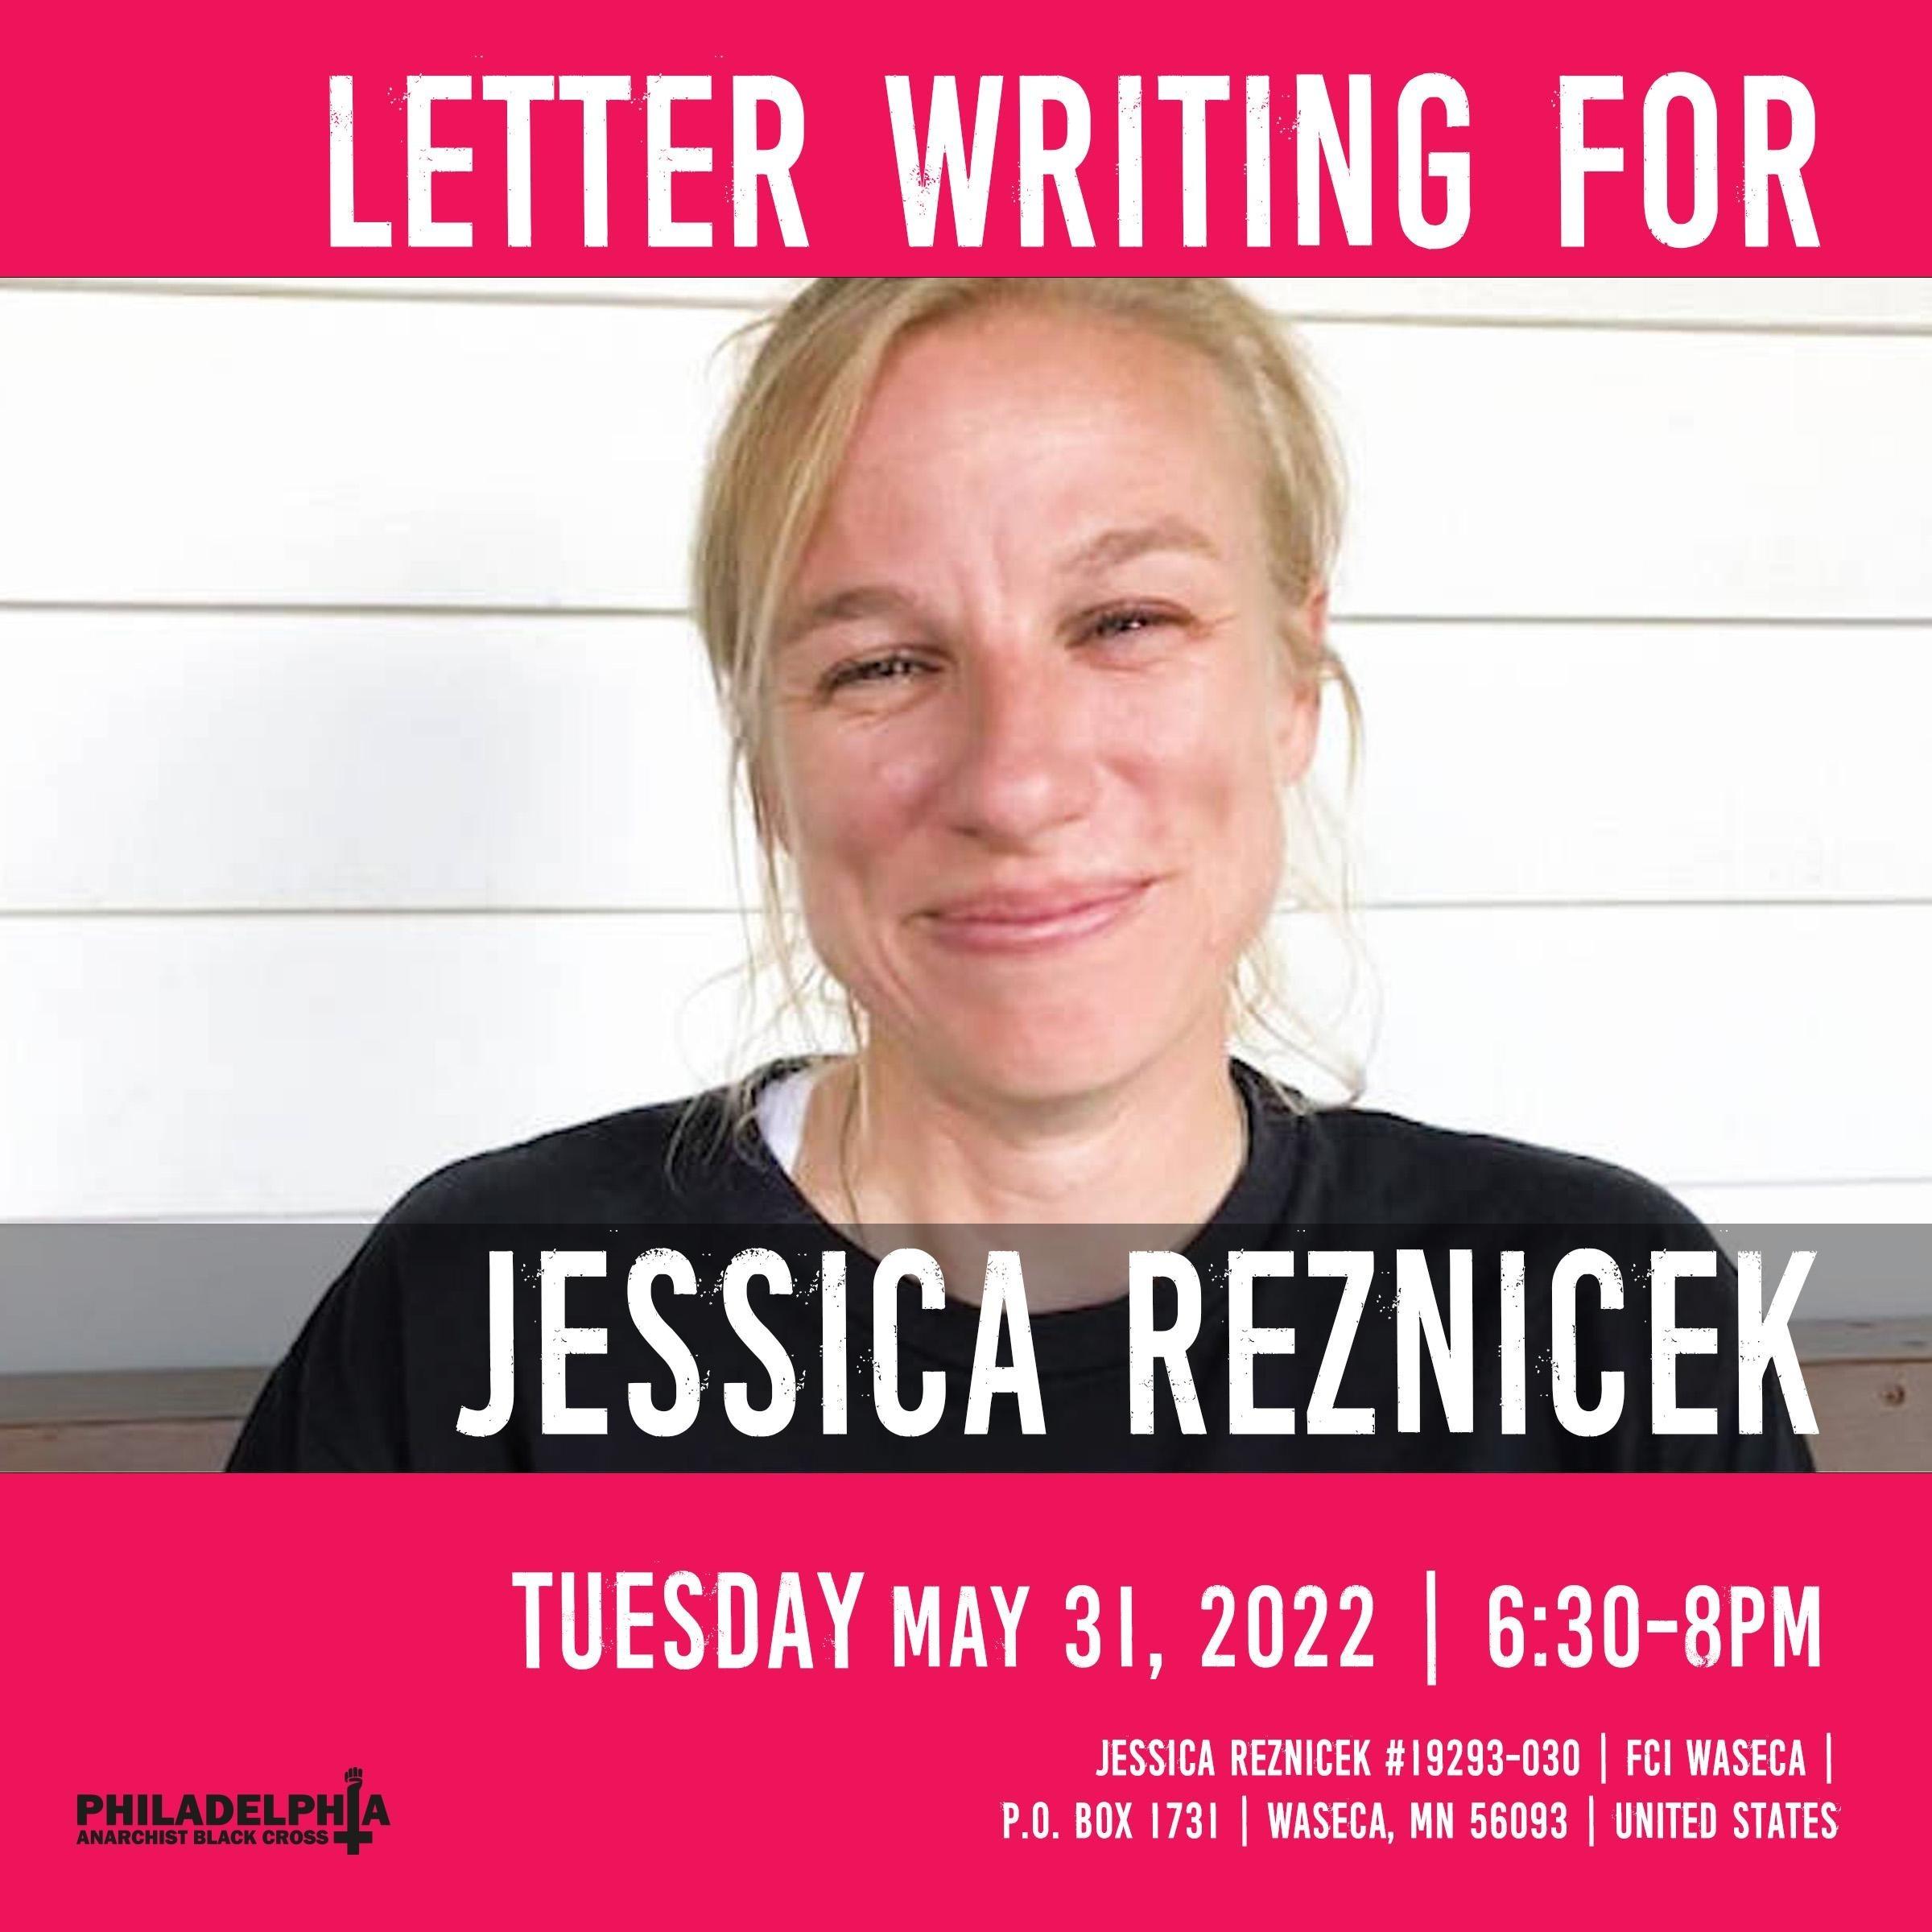 jessica-reznicek-letter-writing.jpg